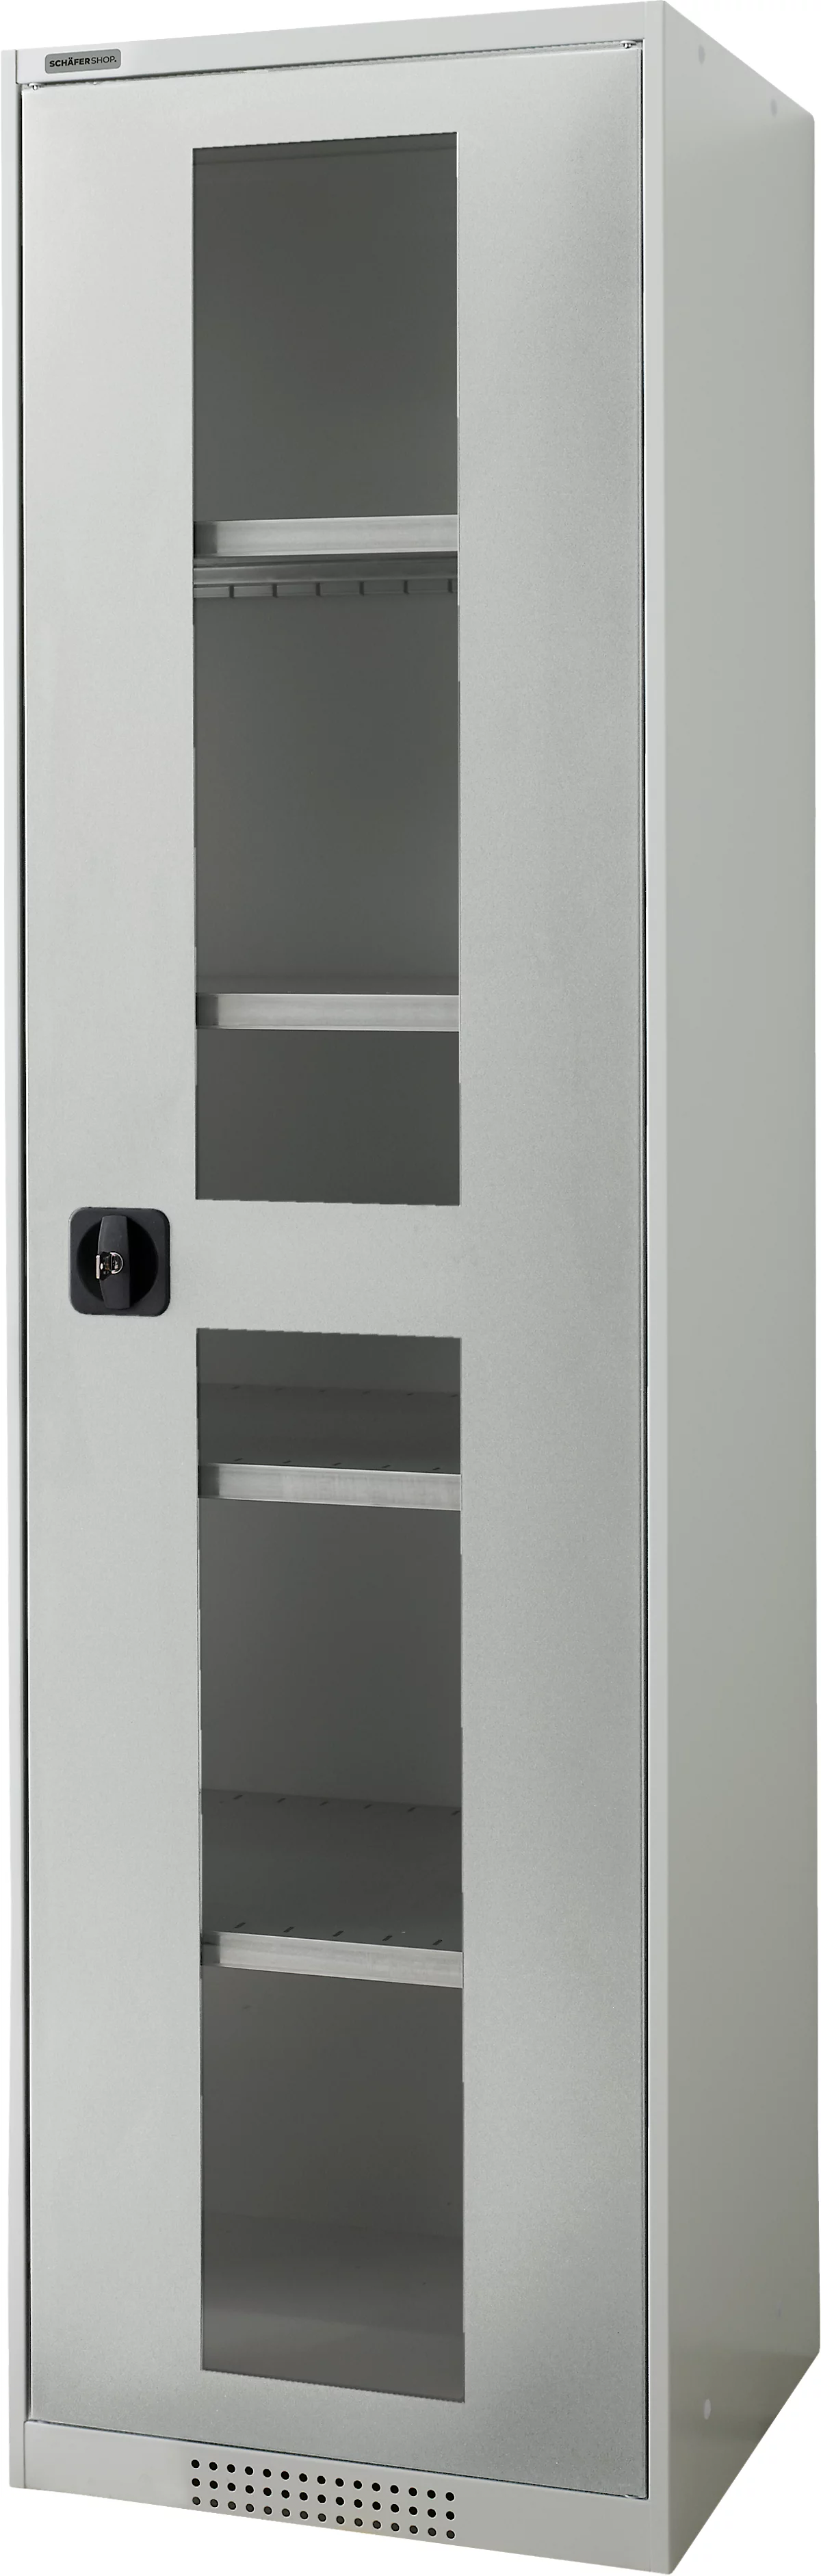 Schäfer Shop Genius armario de dos puertas FS, acero, mirilla, agujeros de ventilación, An 545 x Pr 520 x Al 1950 mm, 5 OH, gris claro/gris claro, hasta 250 kg 